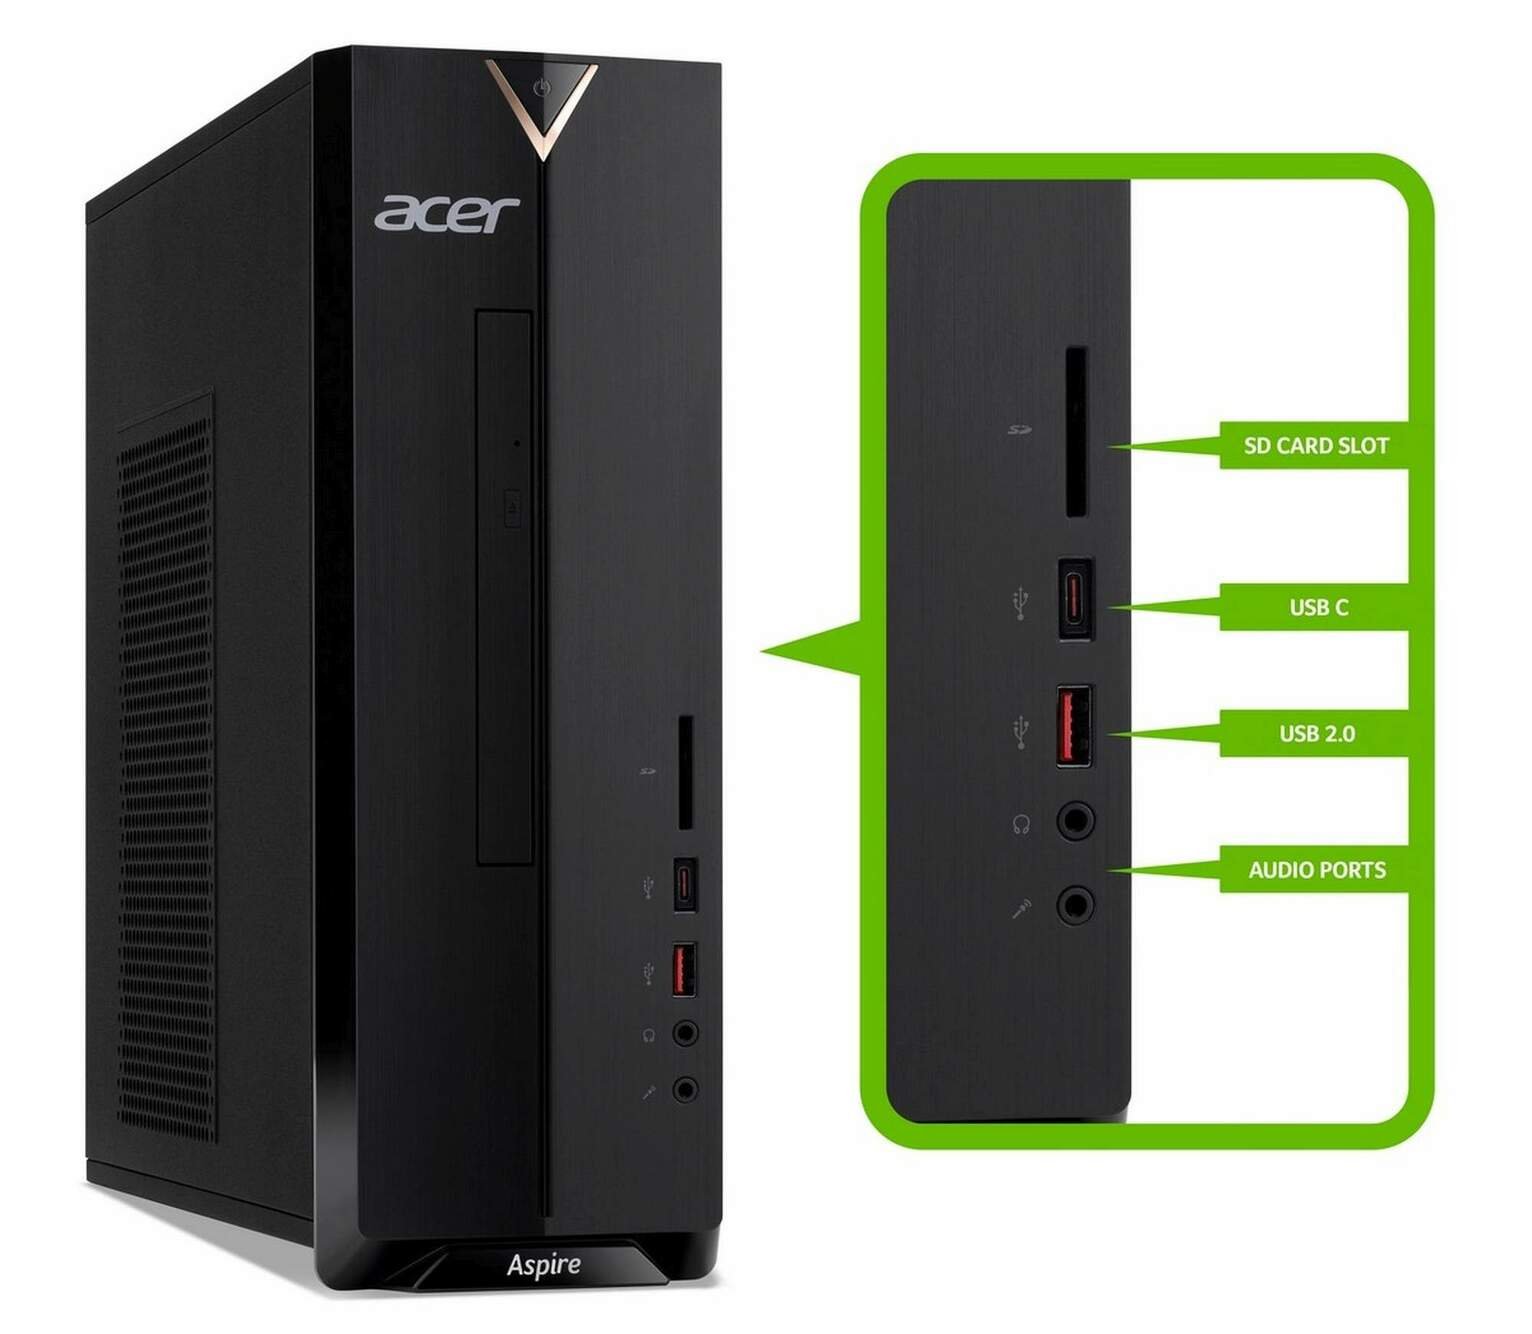 Acer Aspire XC-330 AMD A9 8GB 1TB Desktop PC